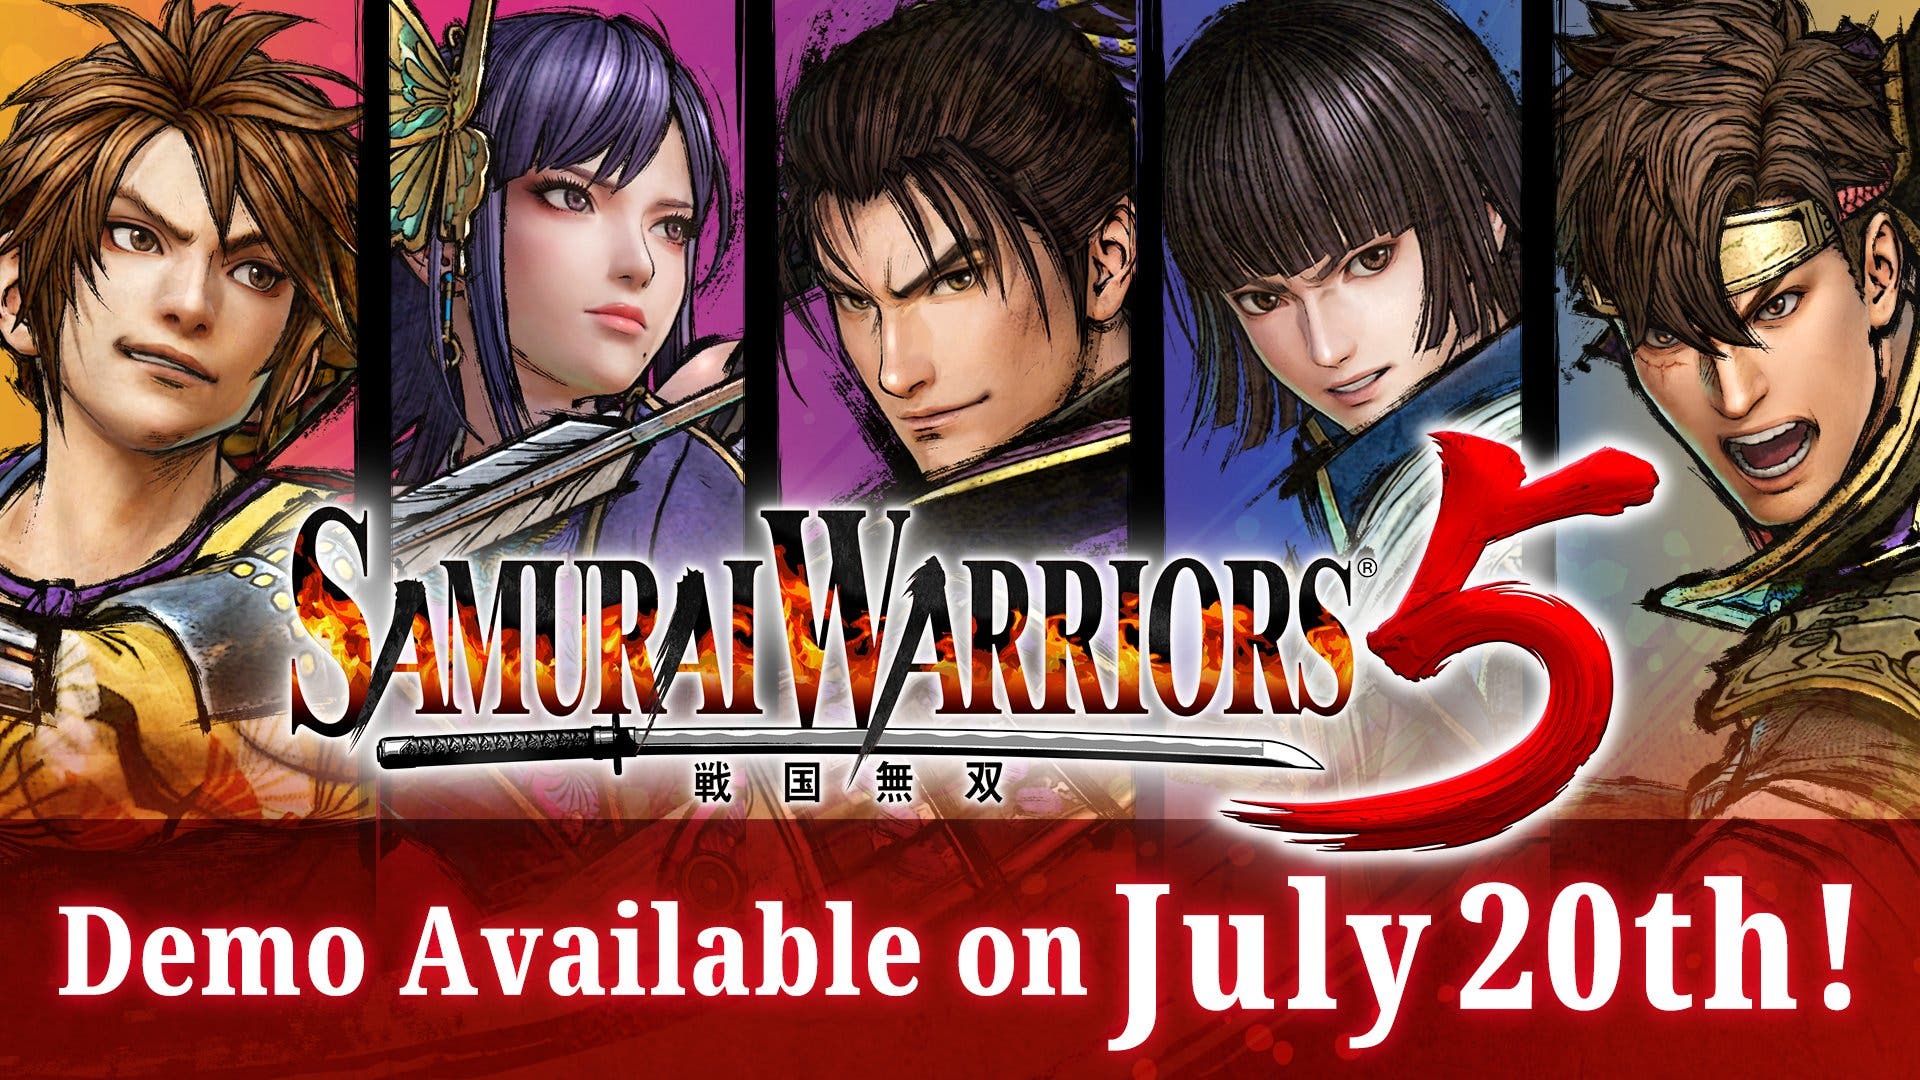 El 20 de julio tendremos disponible una demo de Samurai Warriors 5 en Occidente